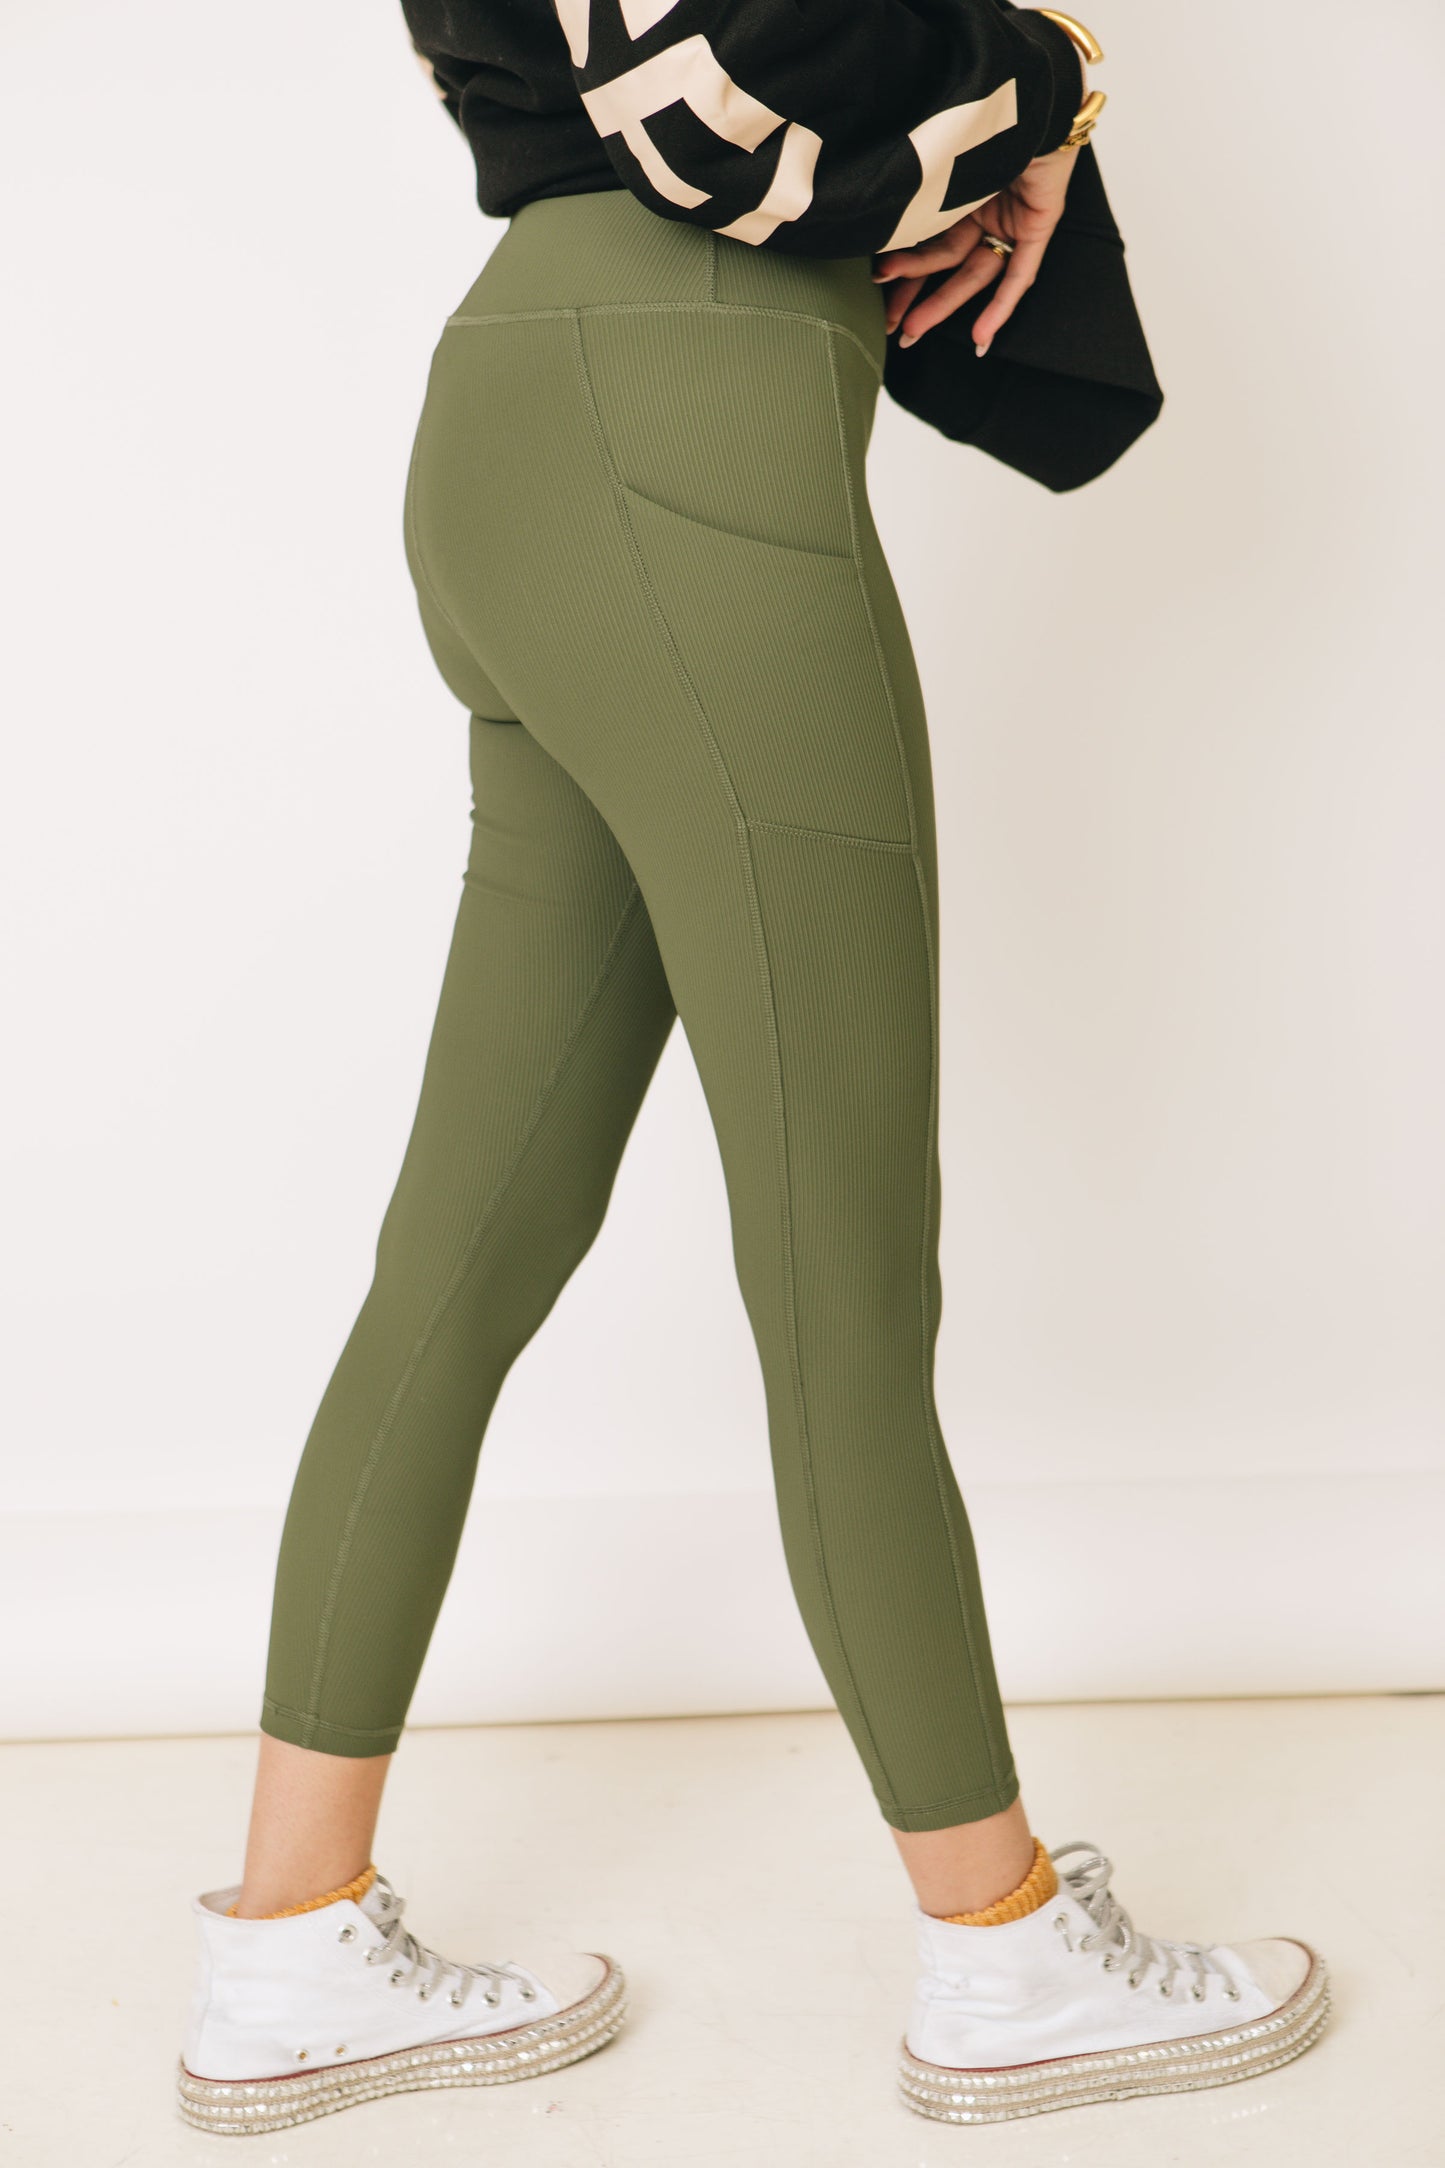 Nylon Rib Yoga Leggings With Side Pockets (S-3XL)